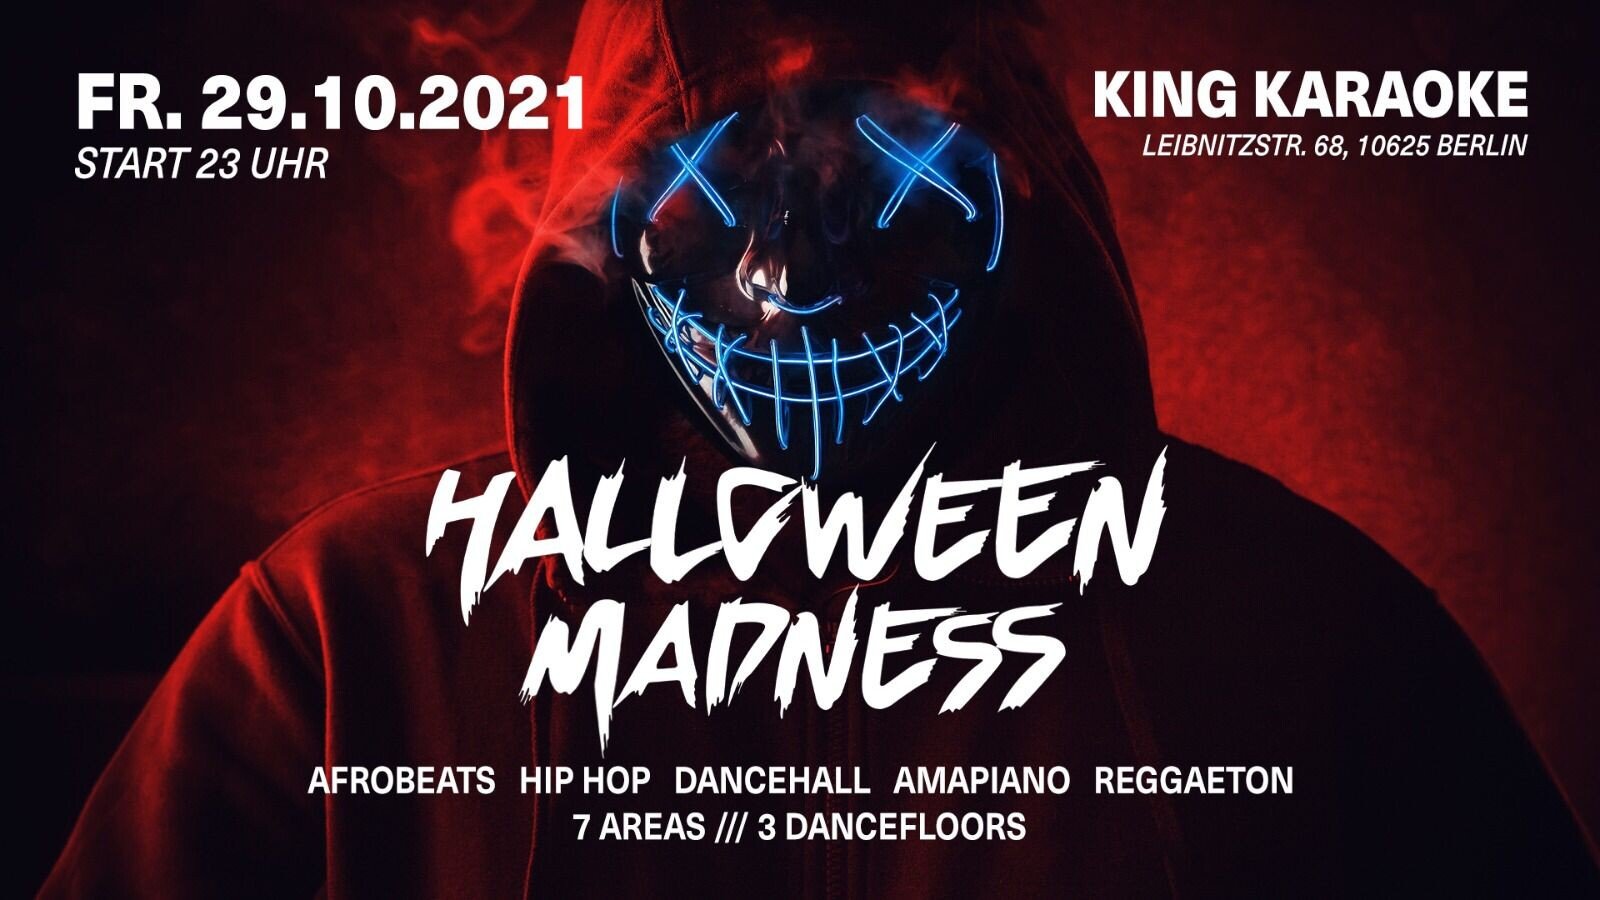 King Karaoke Berlin Halloween Madness